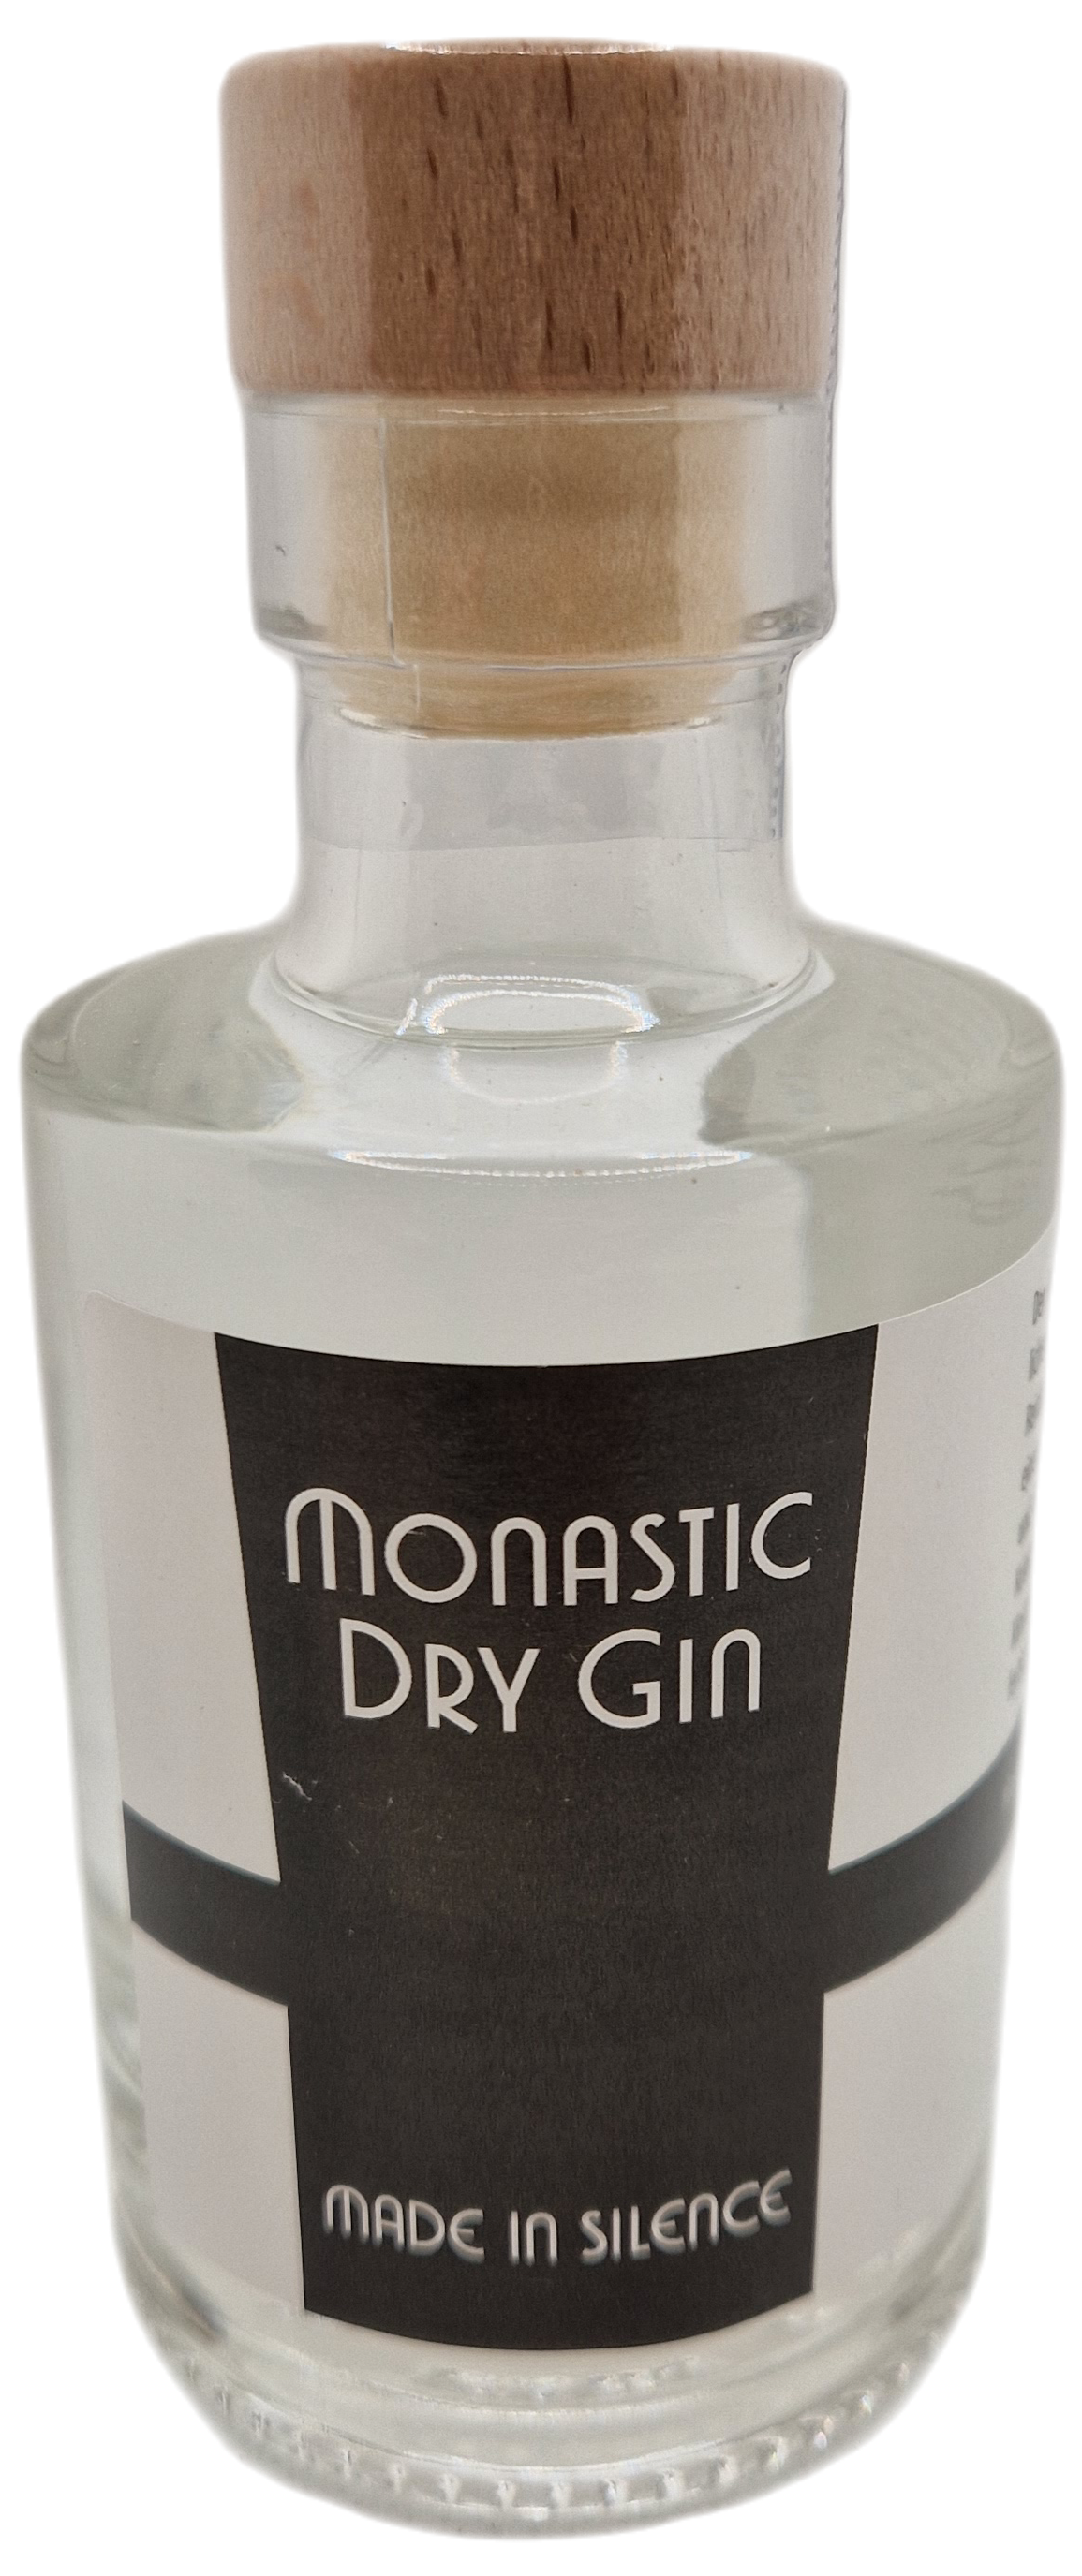 Monastic Dry Gin "100ml"